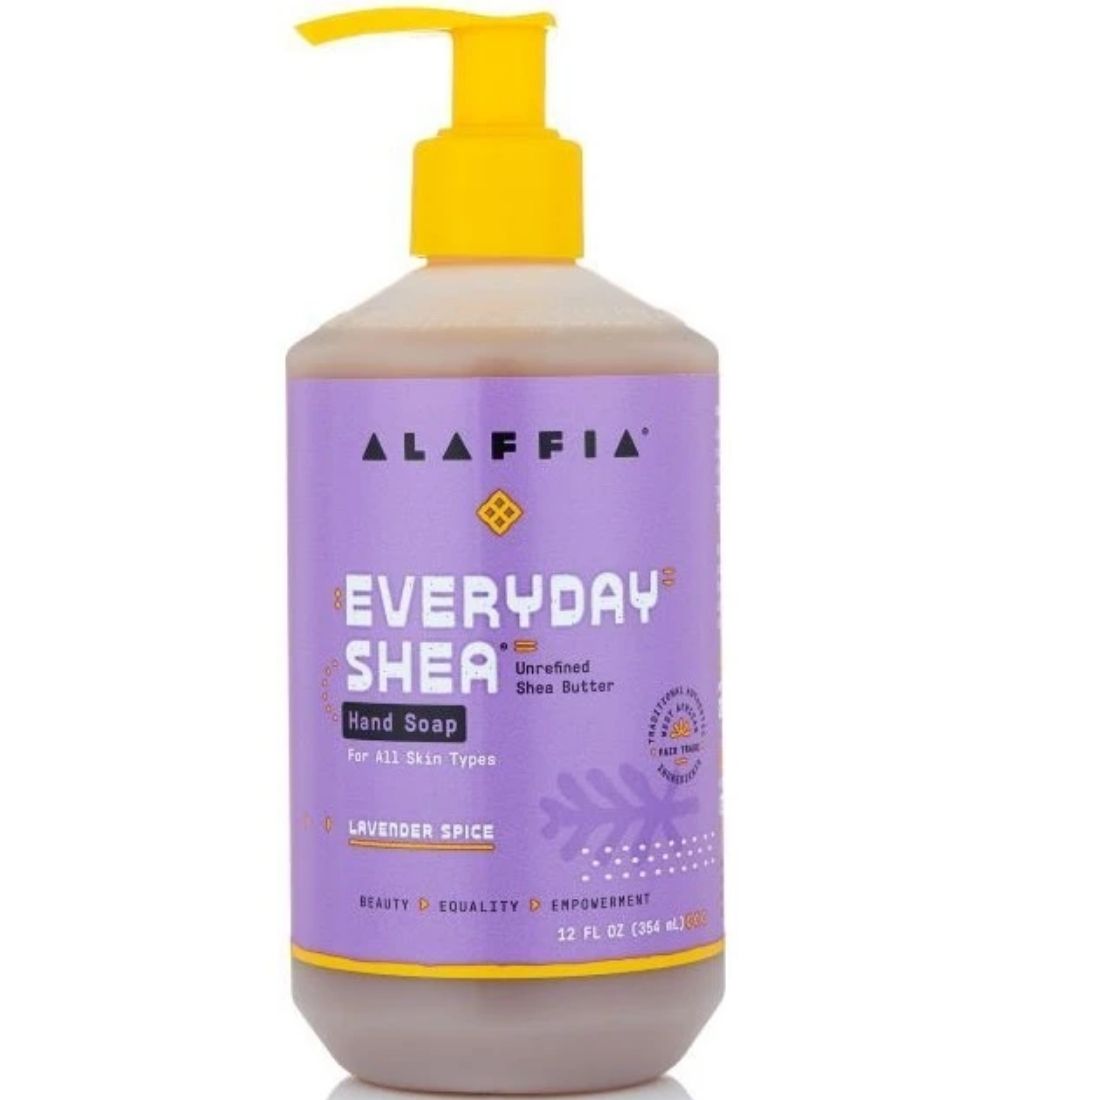 Alaffia Everyday Shea Hand Soap